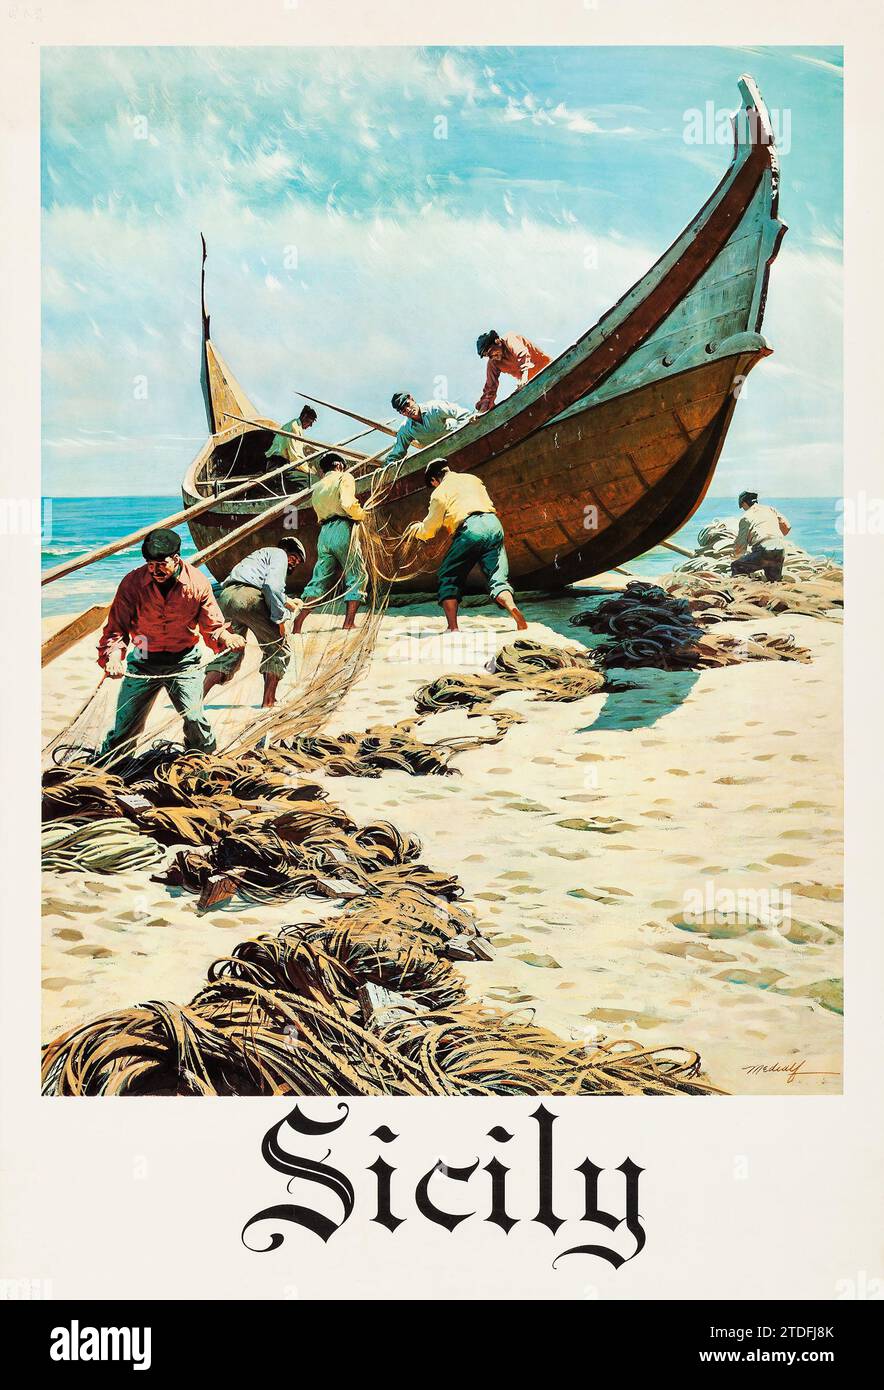 ITALIE - Sicile (c. 1950s). Affiche de voyage italien vintage - pêcheur travaillant sur la plage. Banque D'Images